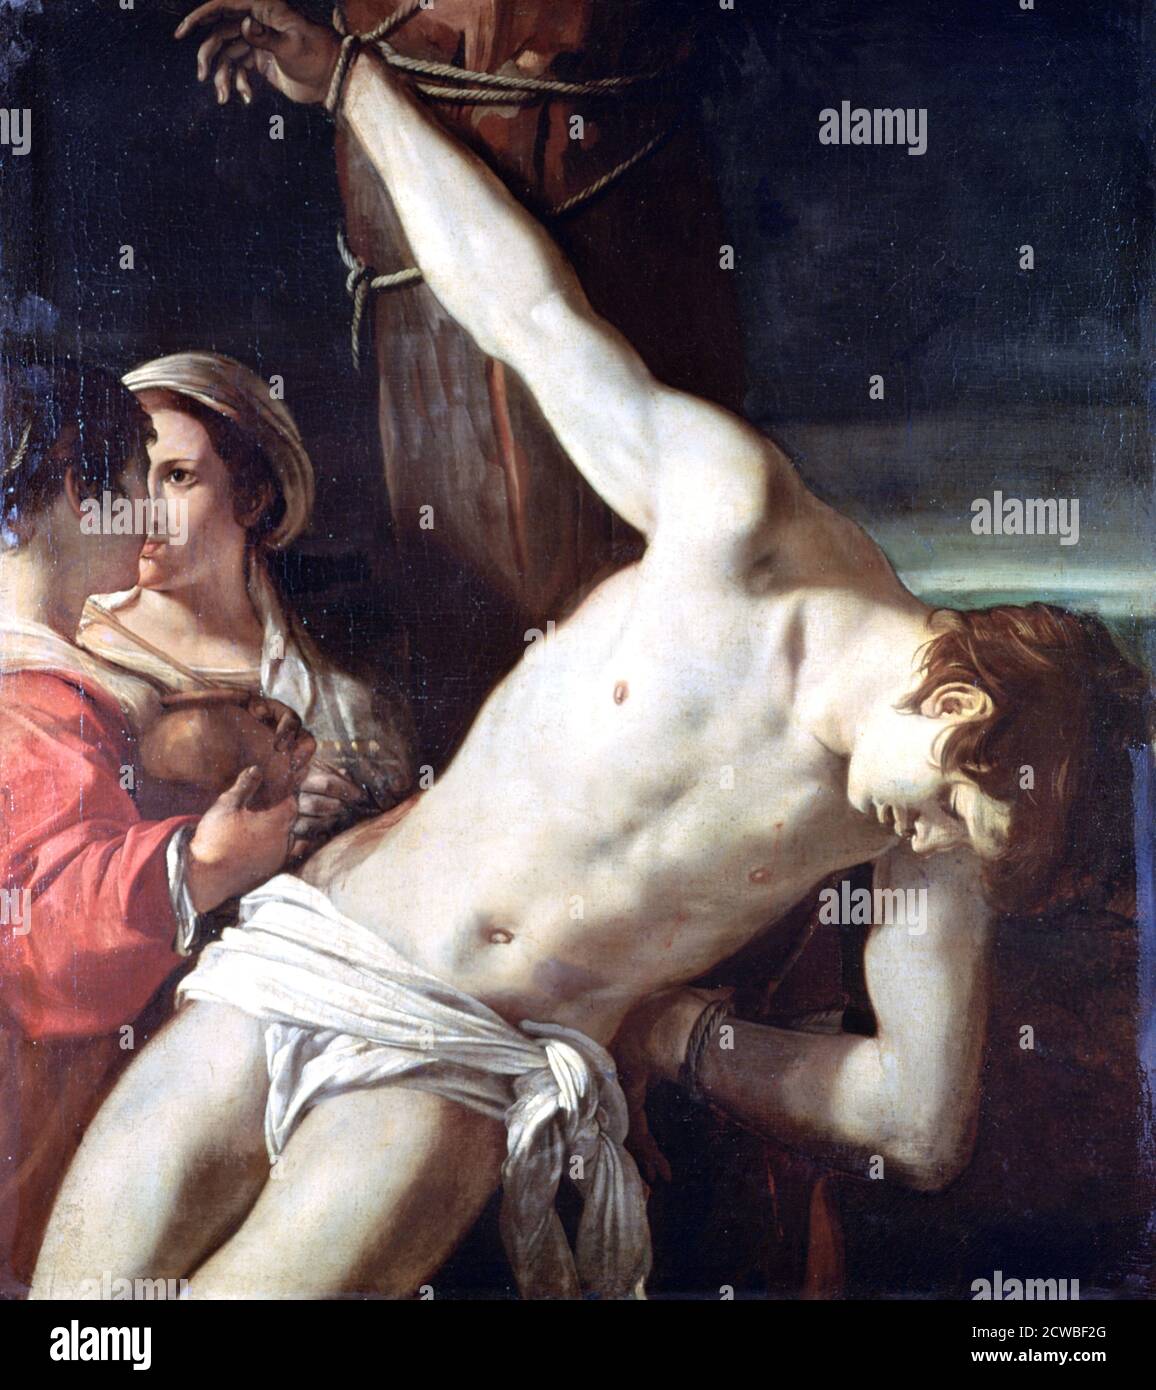 San Sebastiano', c1611-1666 Artist: Guercino. Guercino fu pittore barocco italiano e disegnatore del cento in Emilia, attivo a Roma e Bologna. Foto Stock